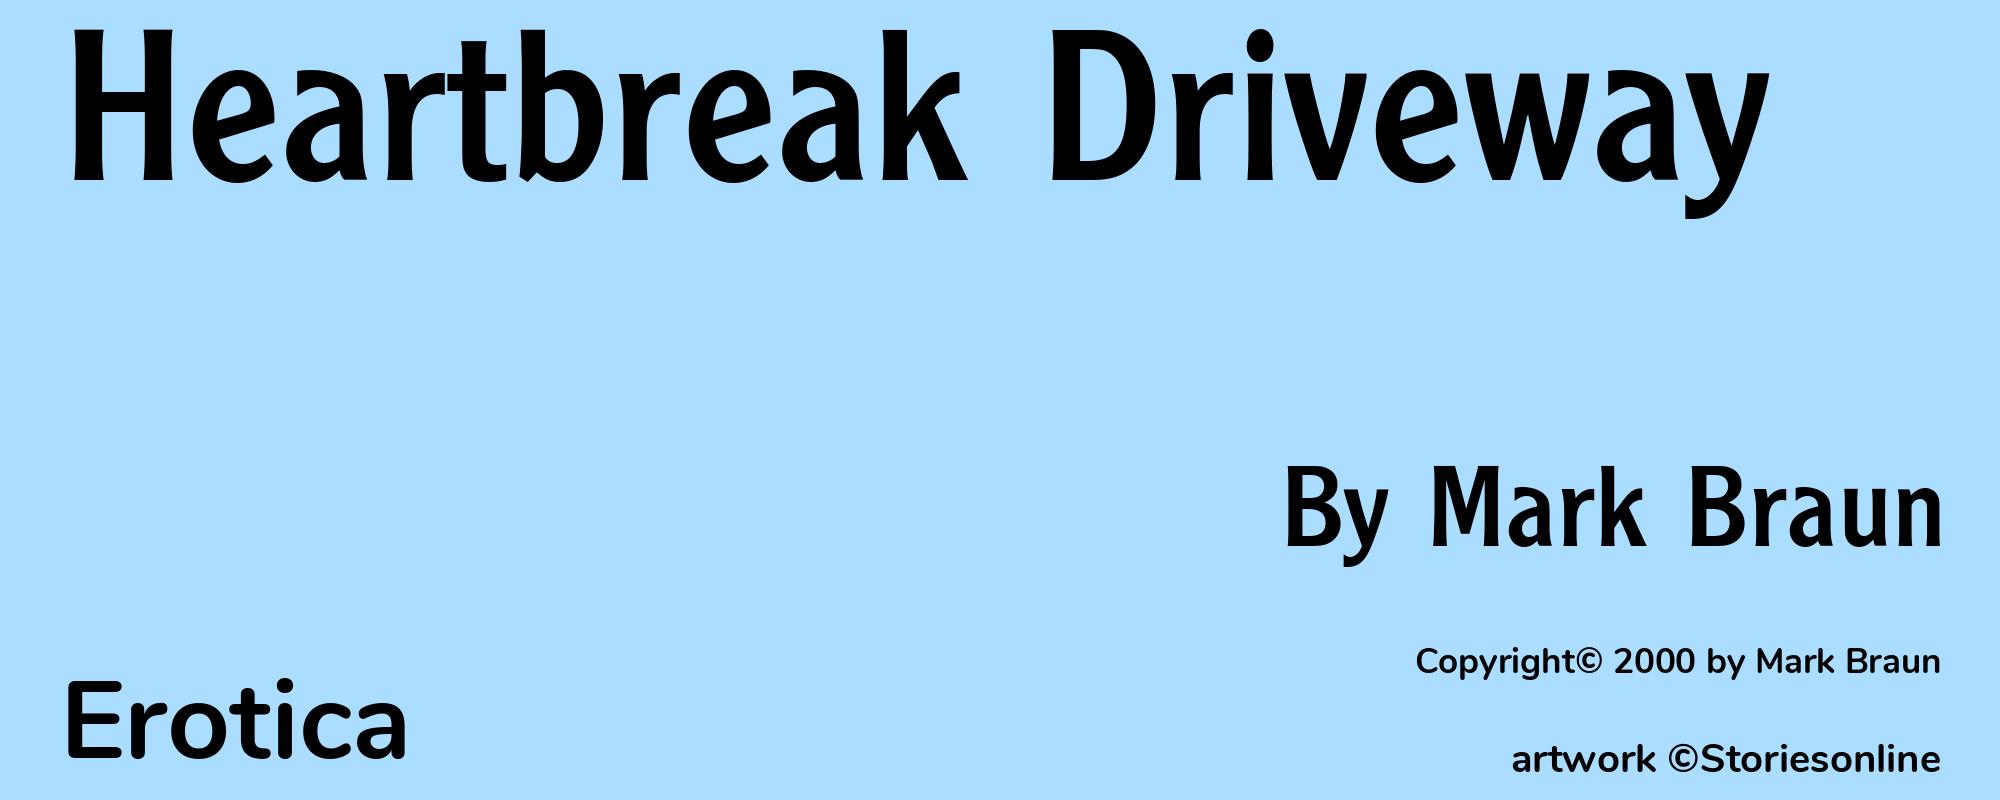 Heartbreak Driveway - Cover